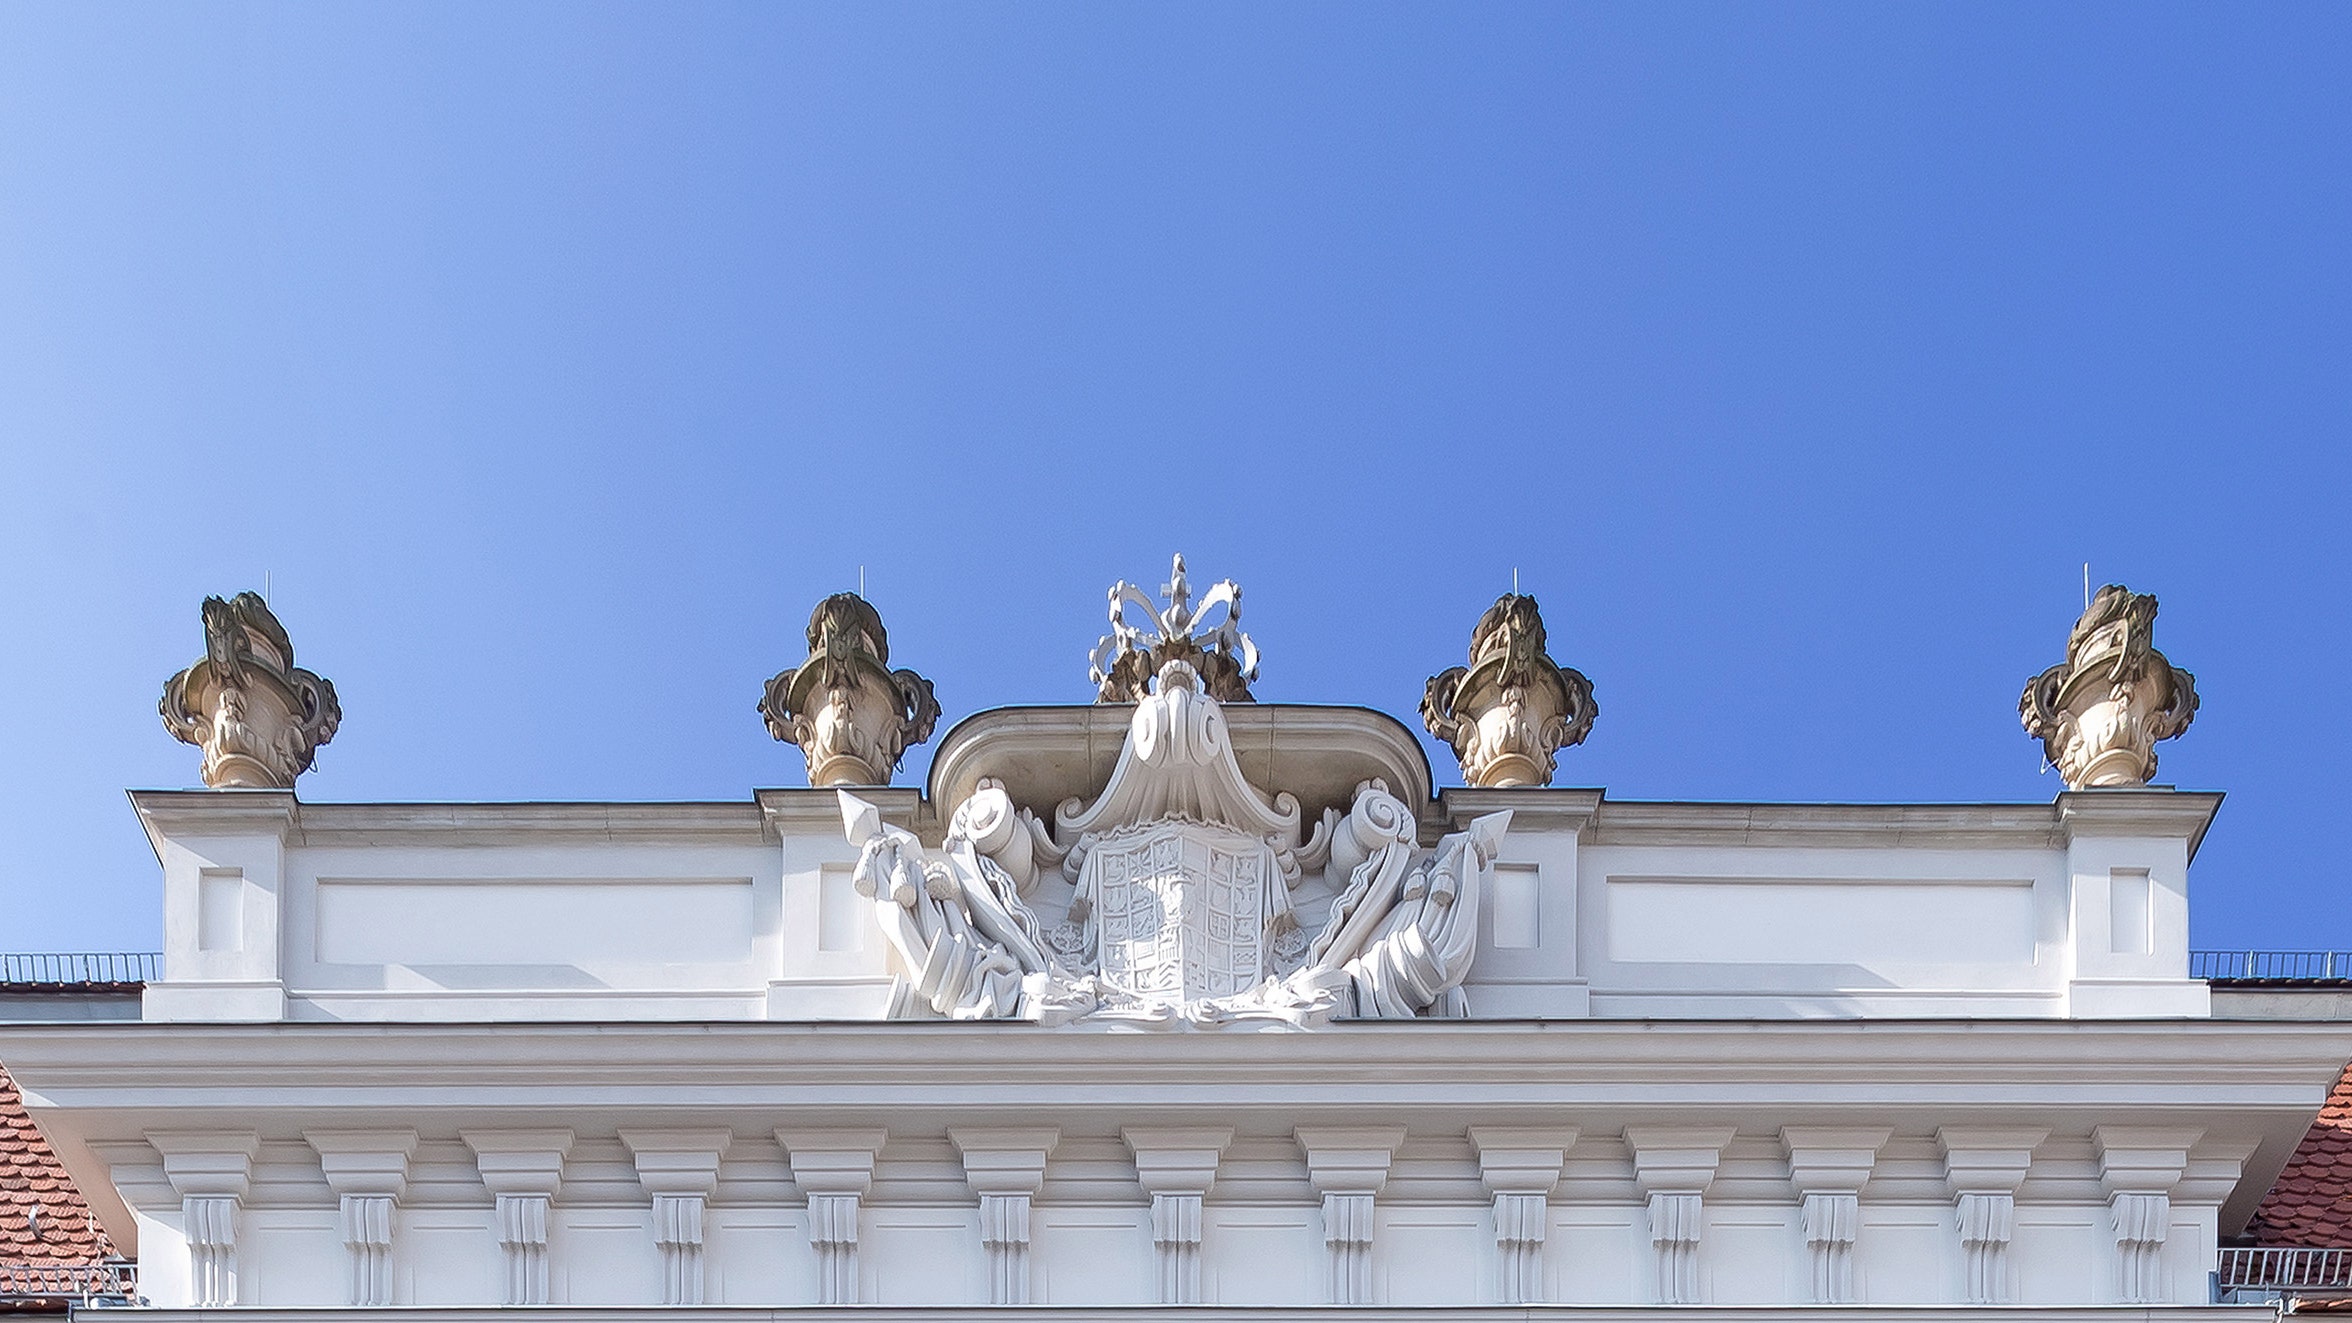 В Берлине открылся новый художественный музей во дворце XVIII века